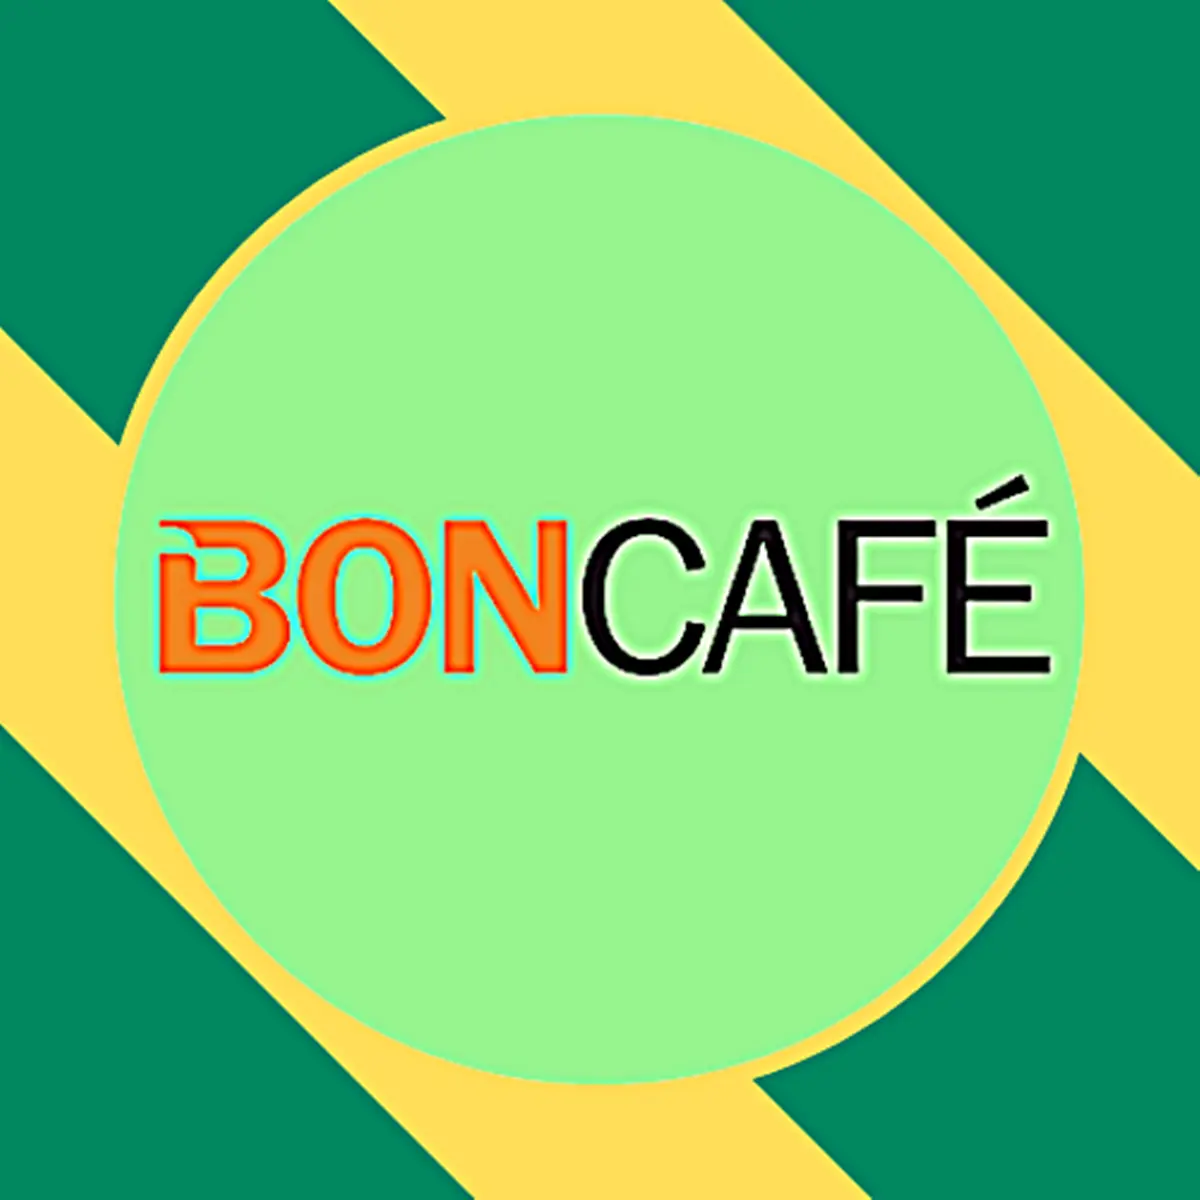 PT Boncafe Indonesia